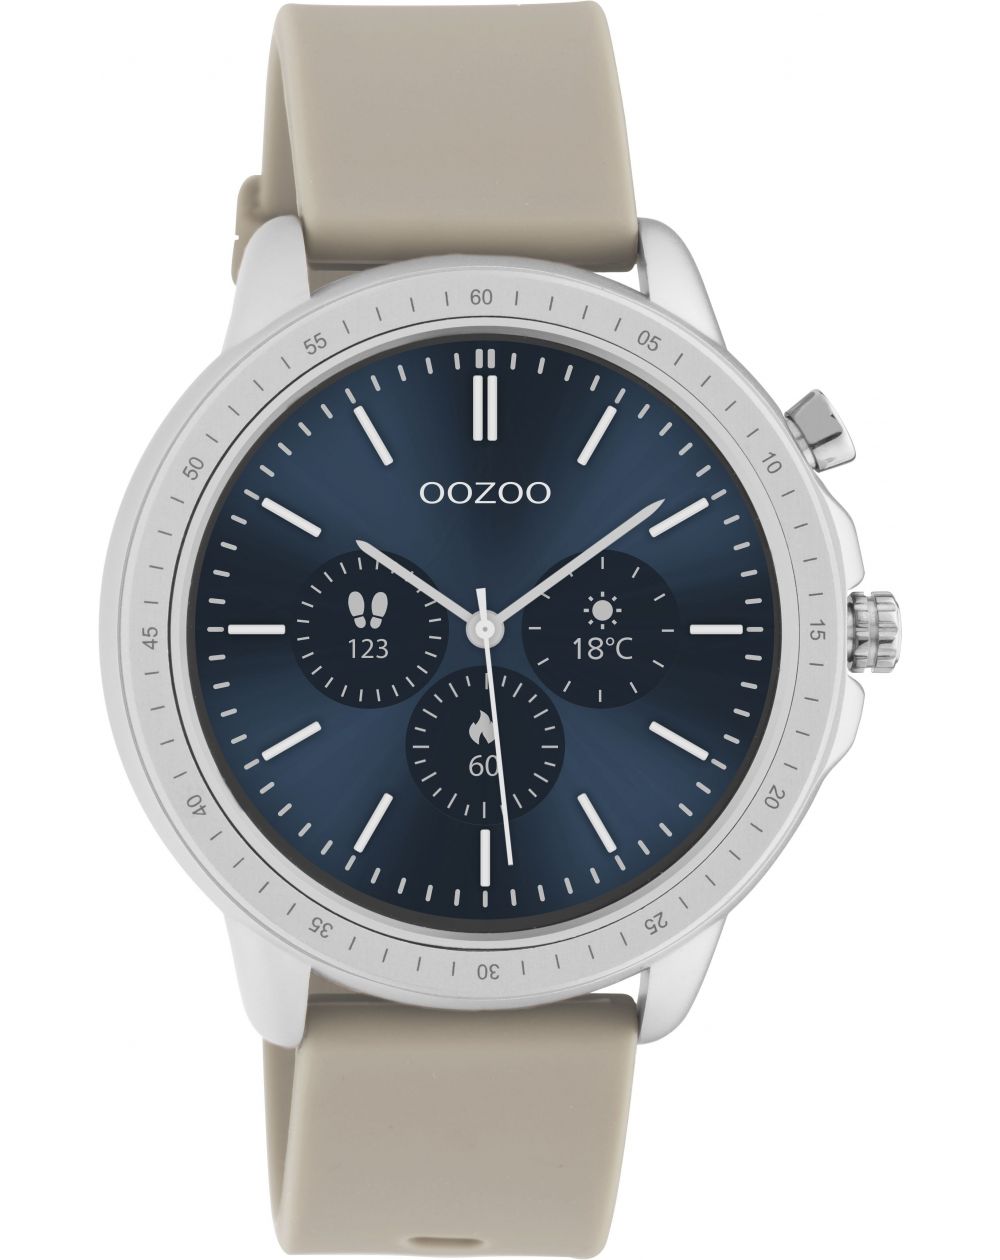 Montre Oozoo Q00313 - Smartwatch - Marque OOZOO - Livraison gratuite